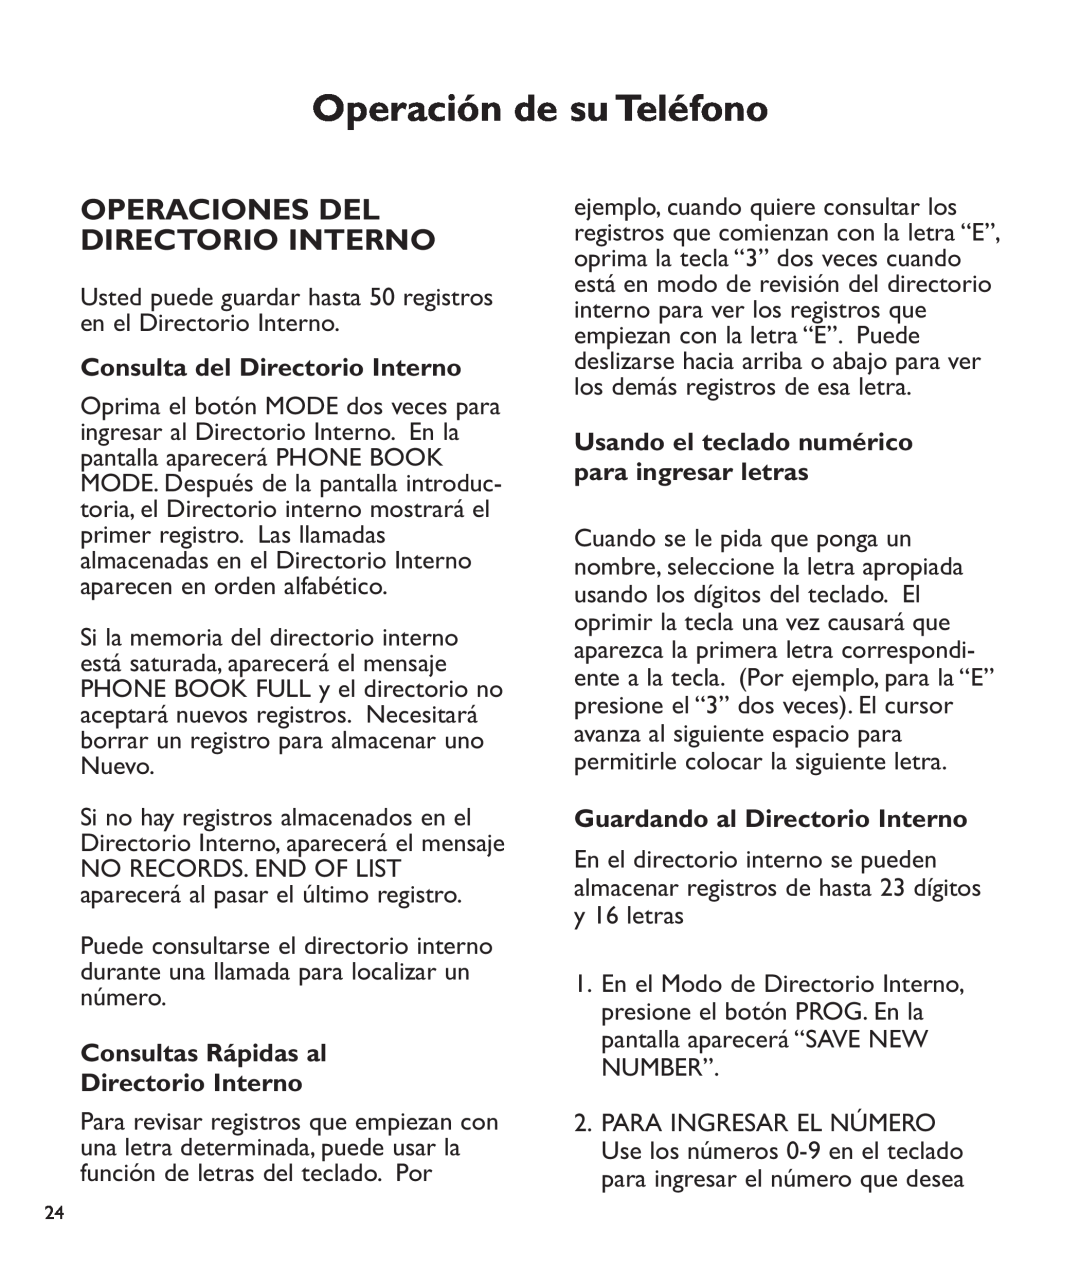 Clarity c2210 Operaciones Del Directorio Interno, Consulta del Directorio Interno, Consultas Rápidas al Directorio Interno 